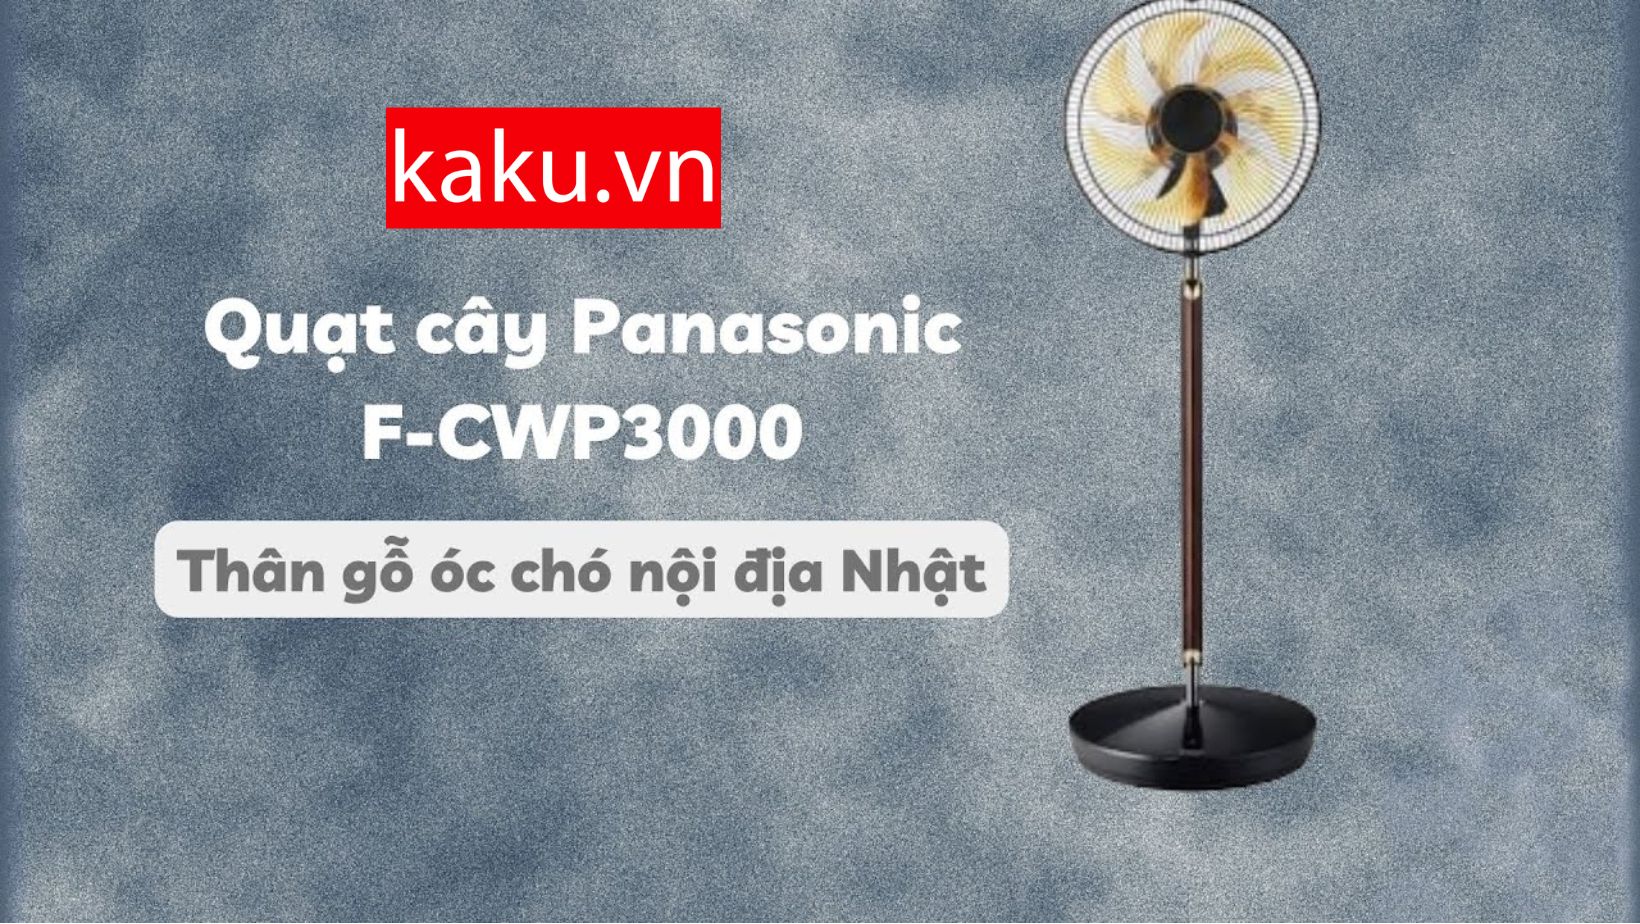 Quạt điện PANASONIC RINTO F-CWP3000 thực sự có quá đắt.